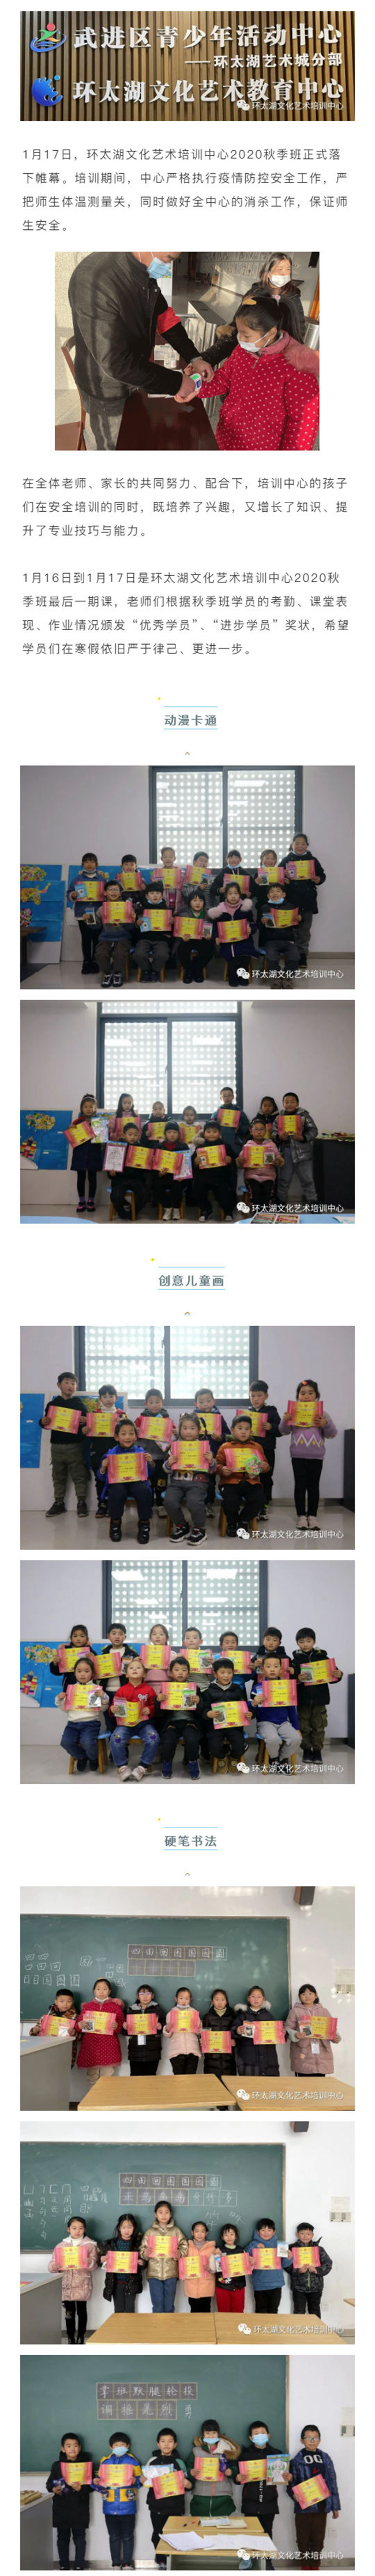 环太湖文化艺术培训中心2020秋季班圆满结束 1.jpg